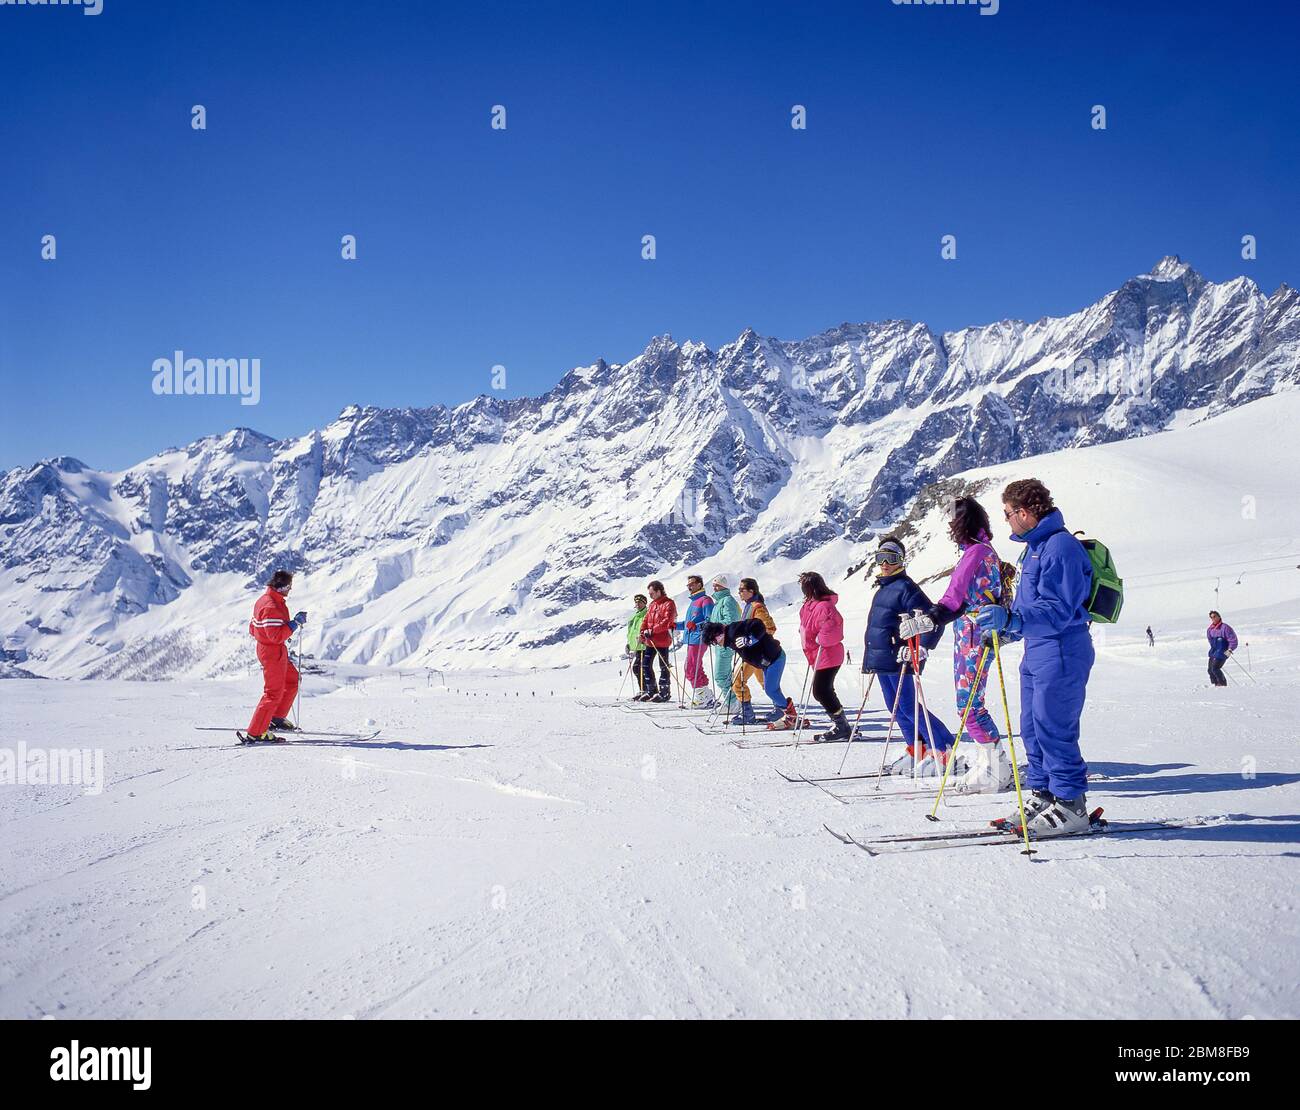 Istruttore di sci con gruppo su pista, Breuil-Cervinia, Valle d'Aosta, Italia Foto Stock